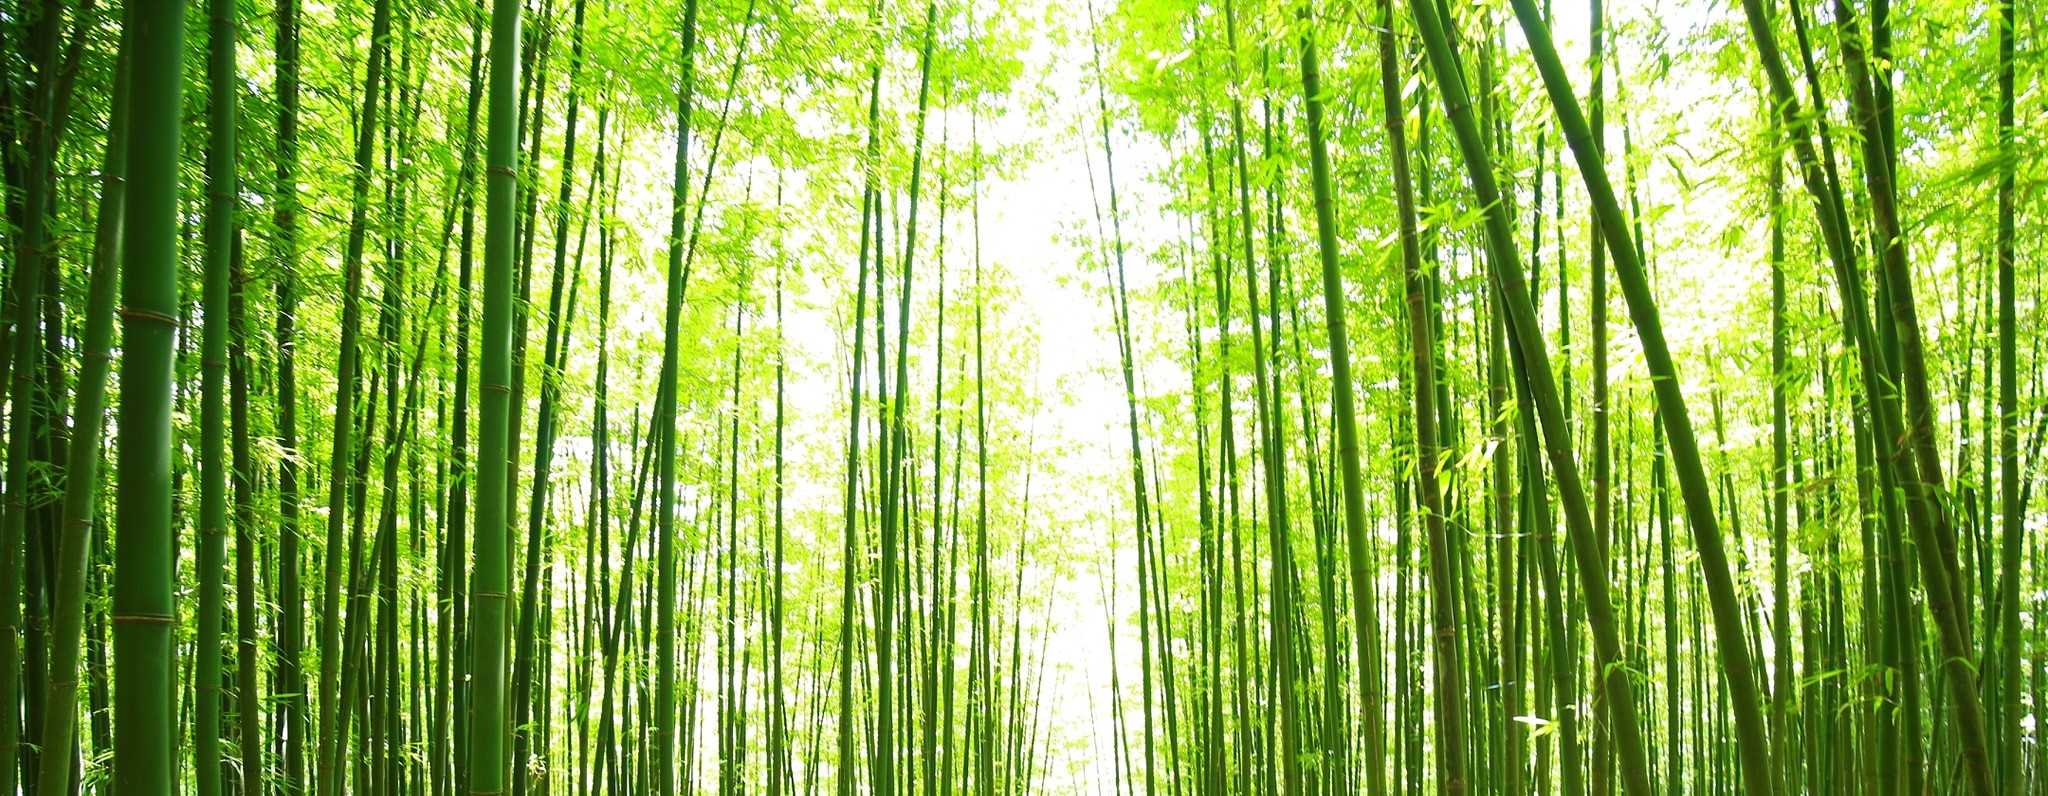 Tuyển tập hình nền rừng tre và trúc xanh mát tuyệt đẹp   thptlamnghiepeduvn